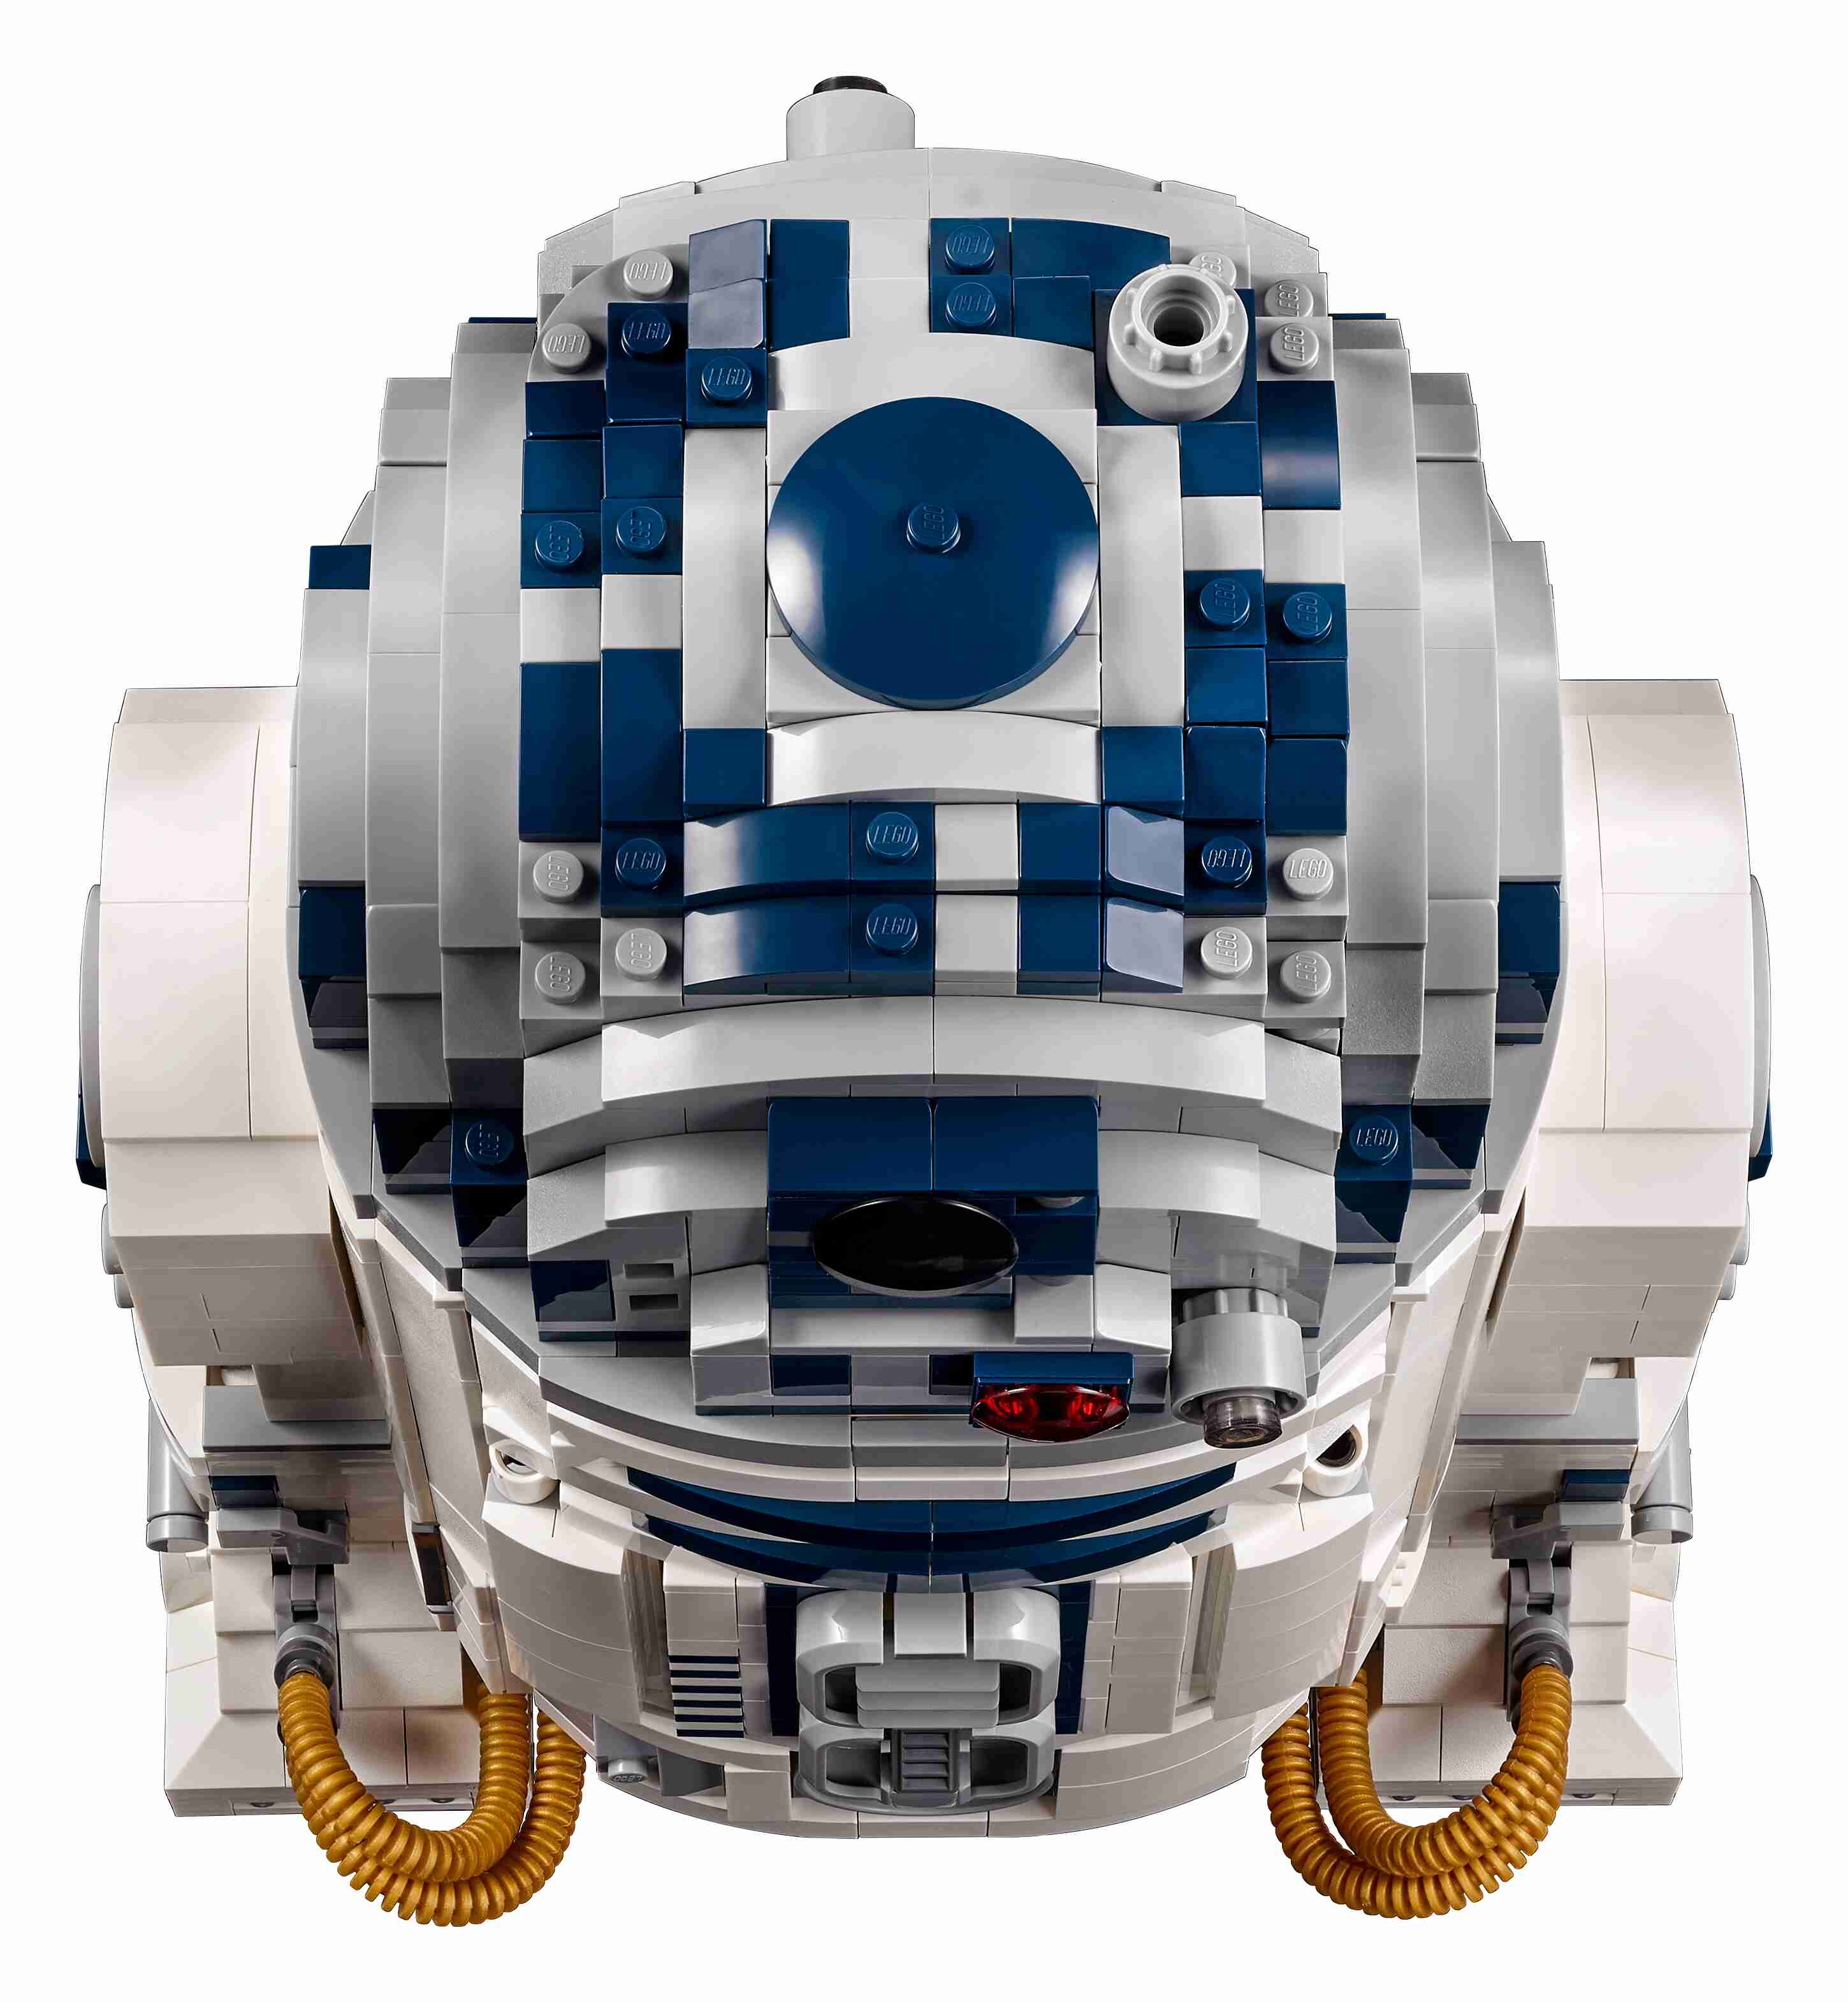 LEGO 75308 Star Wars R2-D2 Figur zum Bauen mit Lichtschwert